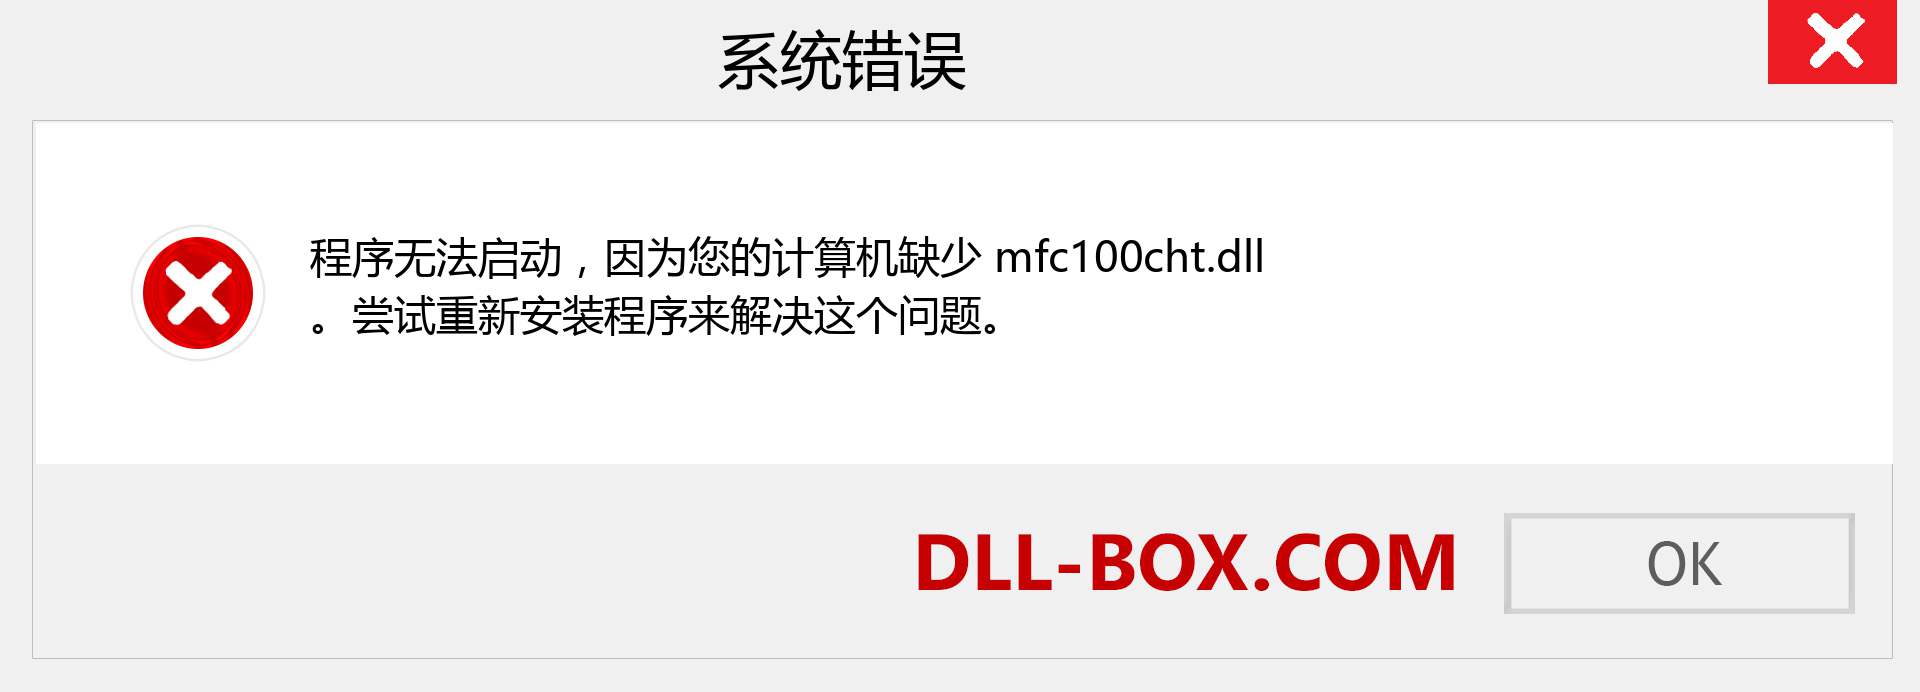 mfc100cht.dll 文件丢失？。 适用于 Windows 7、8、10 的下载 - 修复 Windows、照片、图像上的 mfc100cht dll 丢失错误